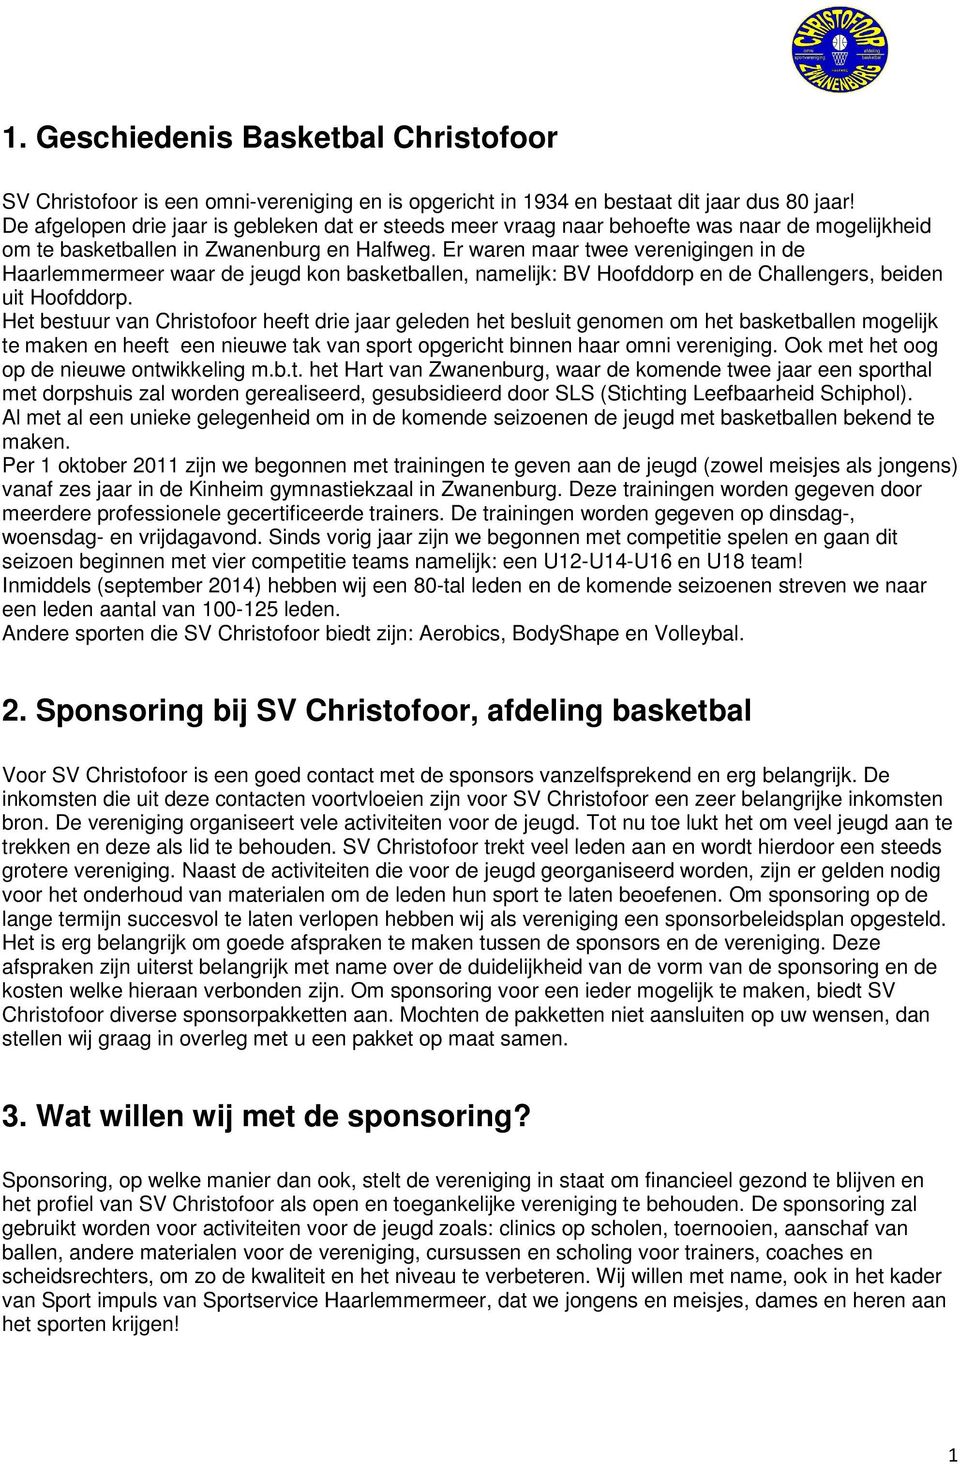 Er waren maar twee verenigingen in de Haarlemmermeer waar de jeugd kon basketballen, namelijk: BV Hoofddorp en de Challengers, beiden uit Hoofddorp.